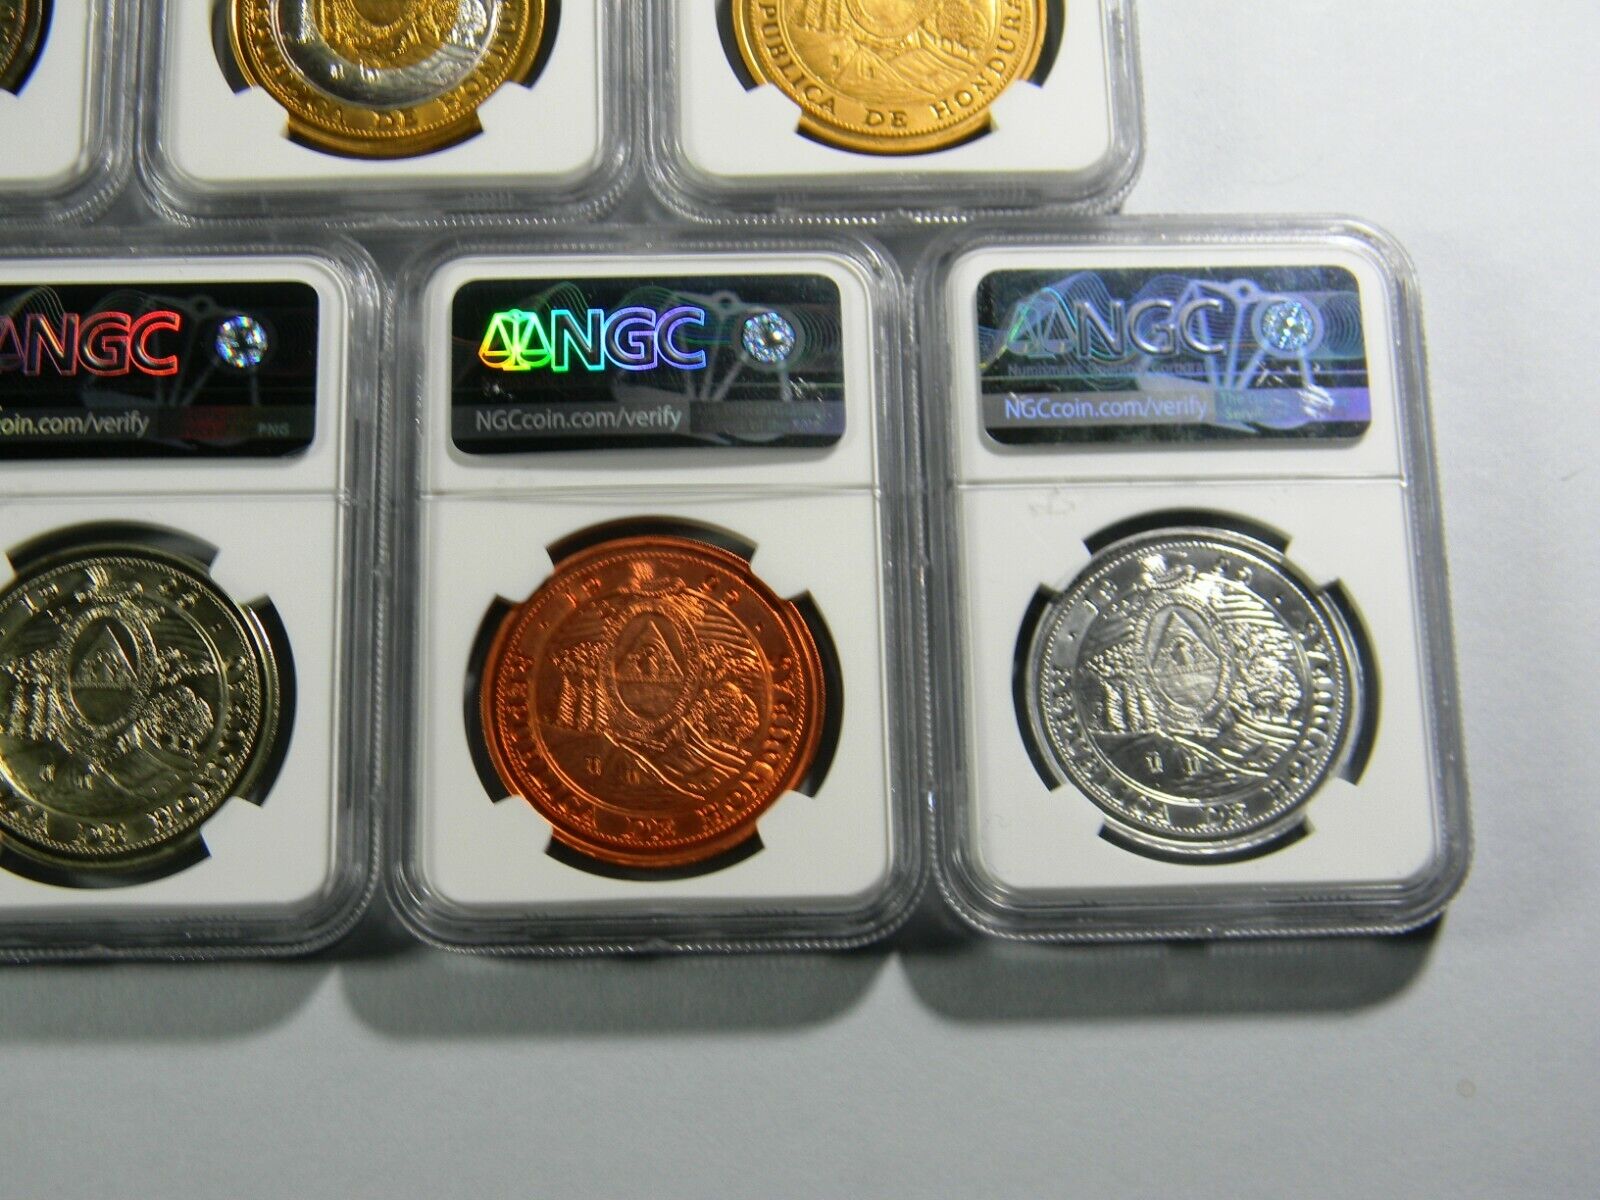 1995 Honduras 10 Lempiras 7 coin Lot NGC Certified  Без бренда - фотография #7